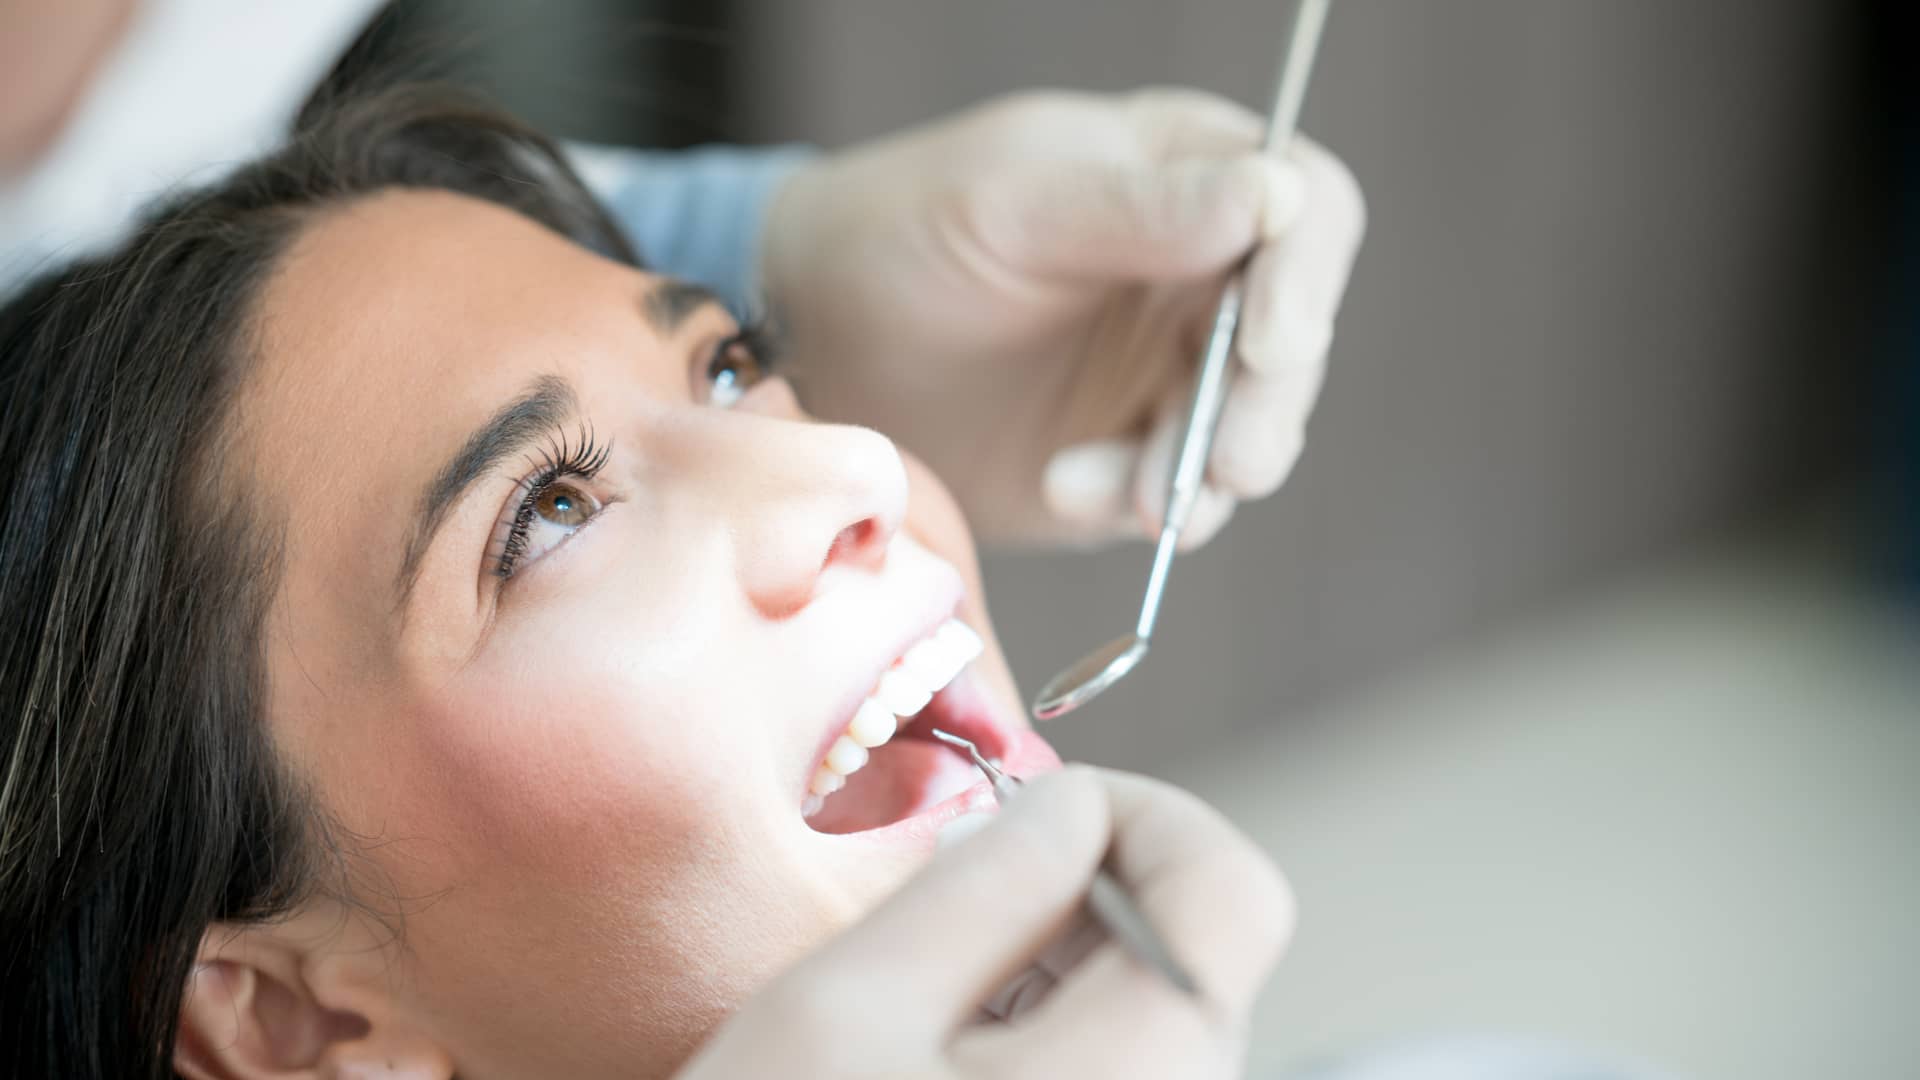 Cobertura seguro dental Allianz: precios, clínicas y teléfono